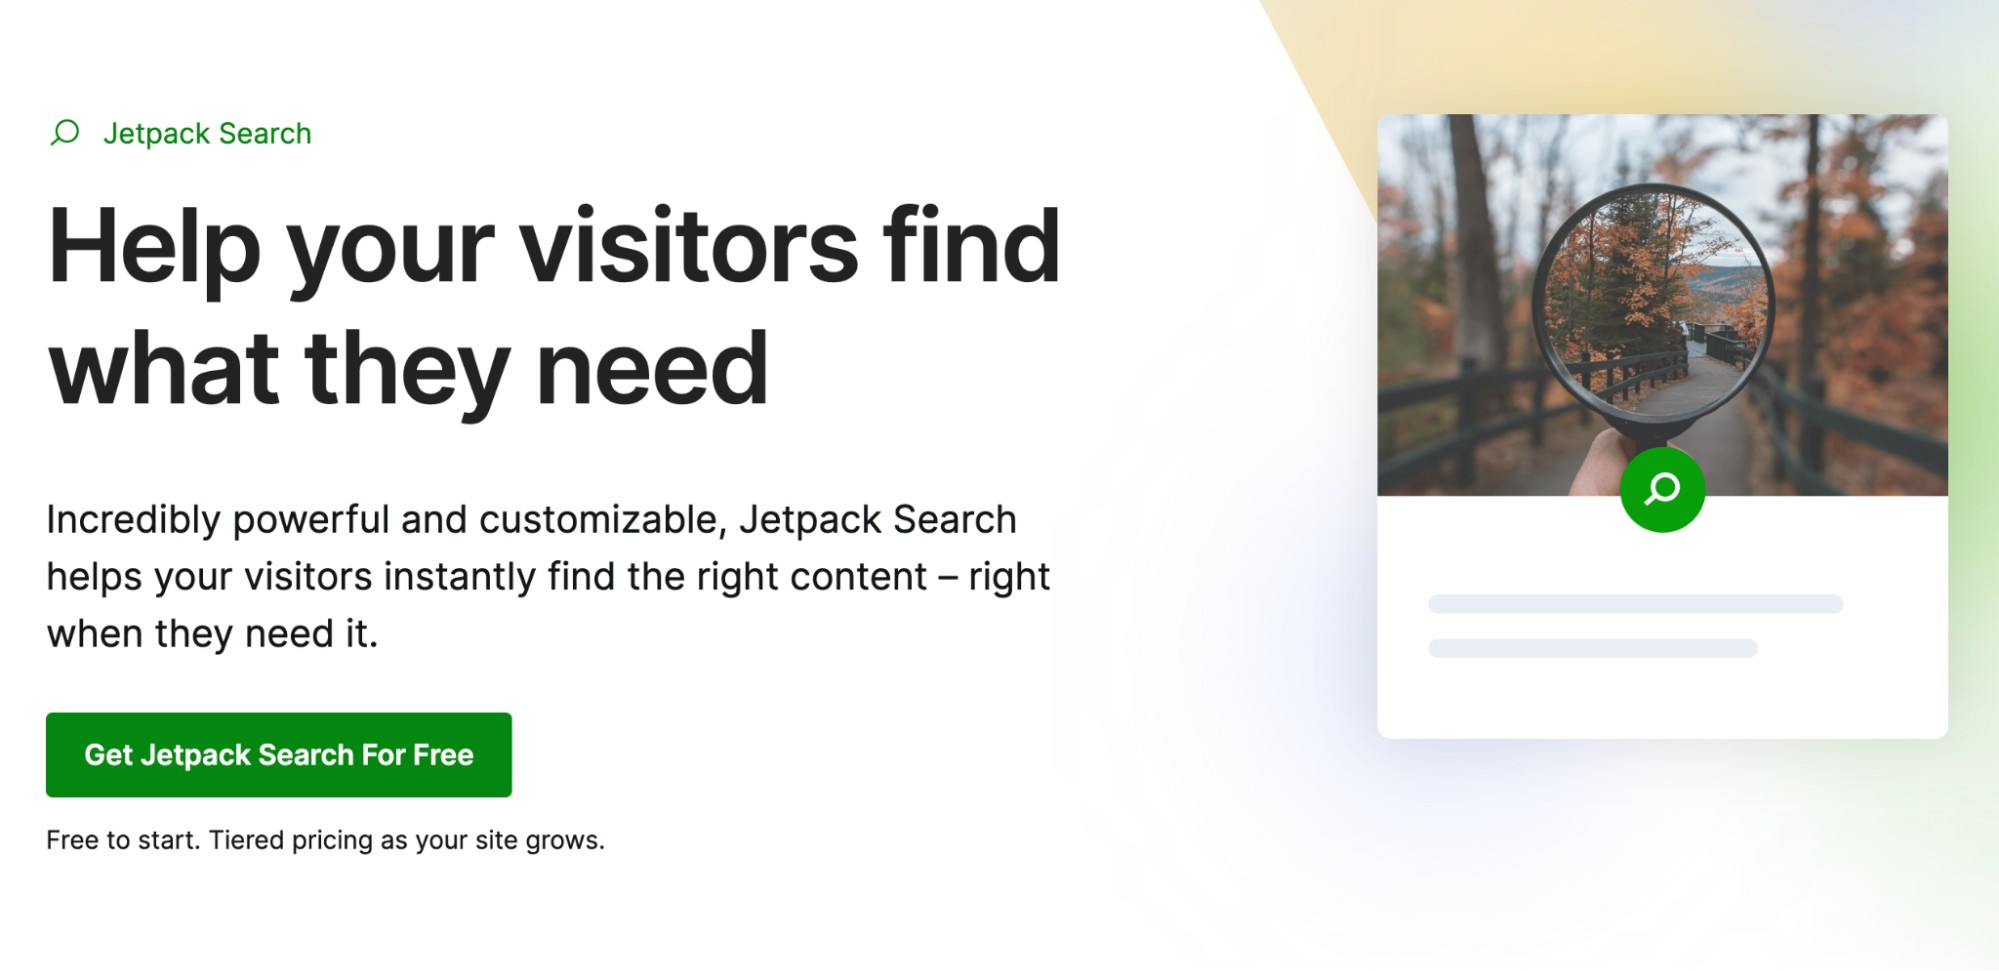 "방문자가 필요한 것을 찾도록 도와주세요."라는 텍스트가 있는 Jetpack 검색 홈페이지.